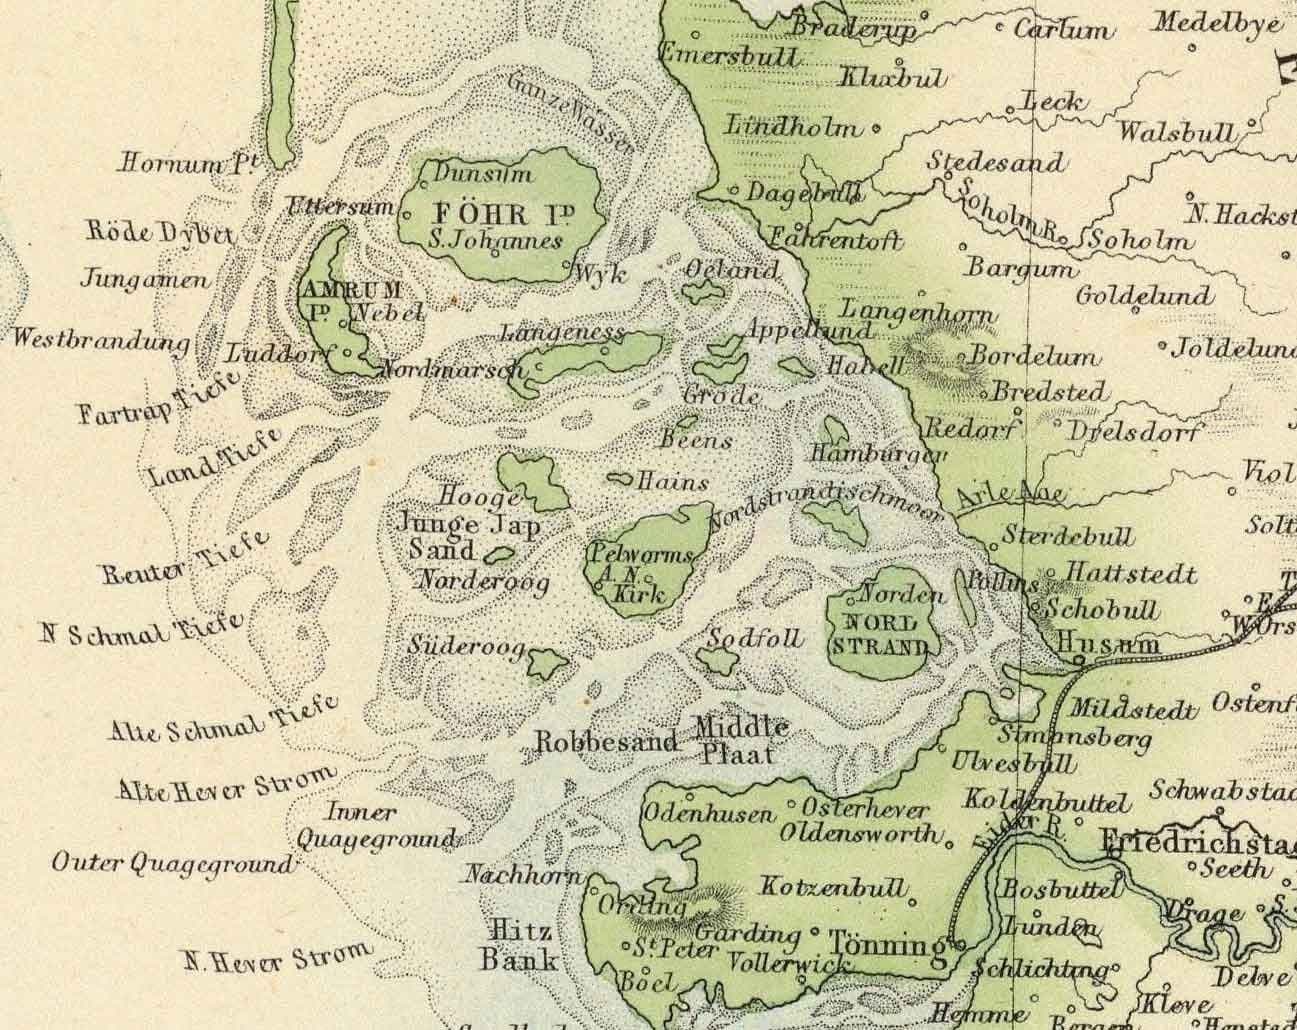 Old Map of Denmark & Schleswig-Holstein, 1872 by Fullarton - Iceland, Faroe Islands, Danish Kingdom, Zeeland, Copenhagen